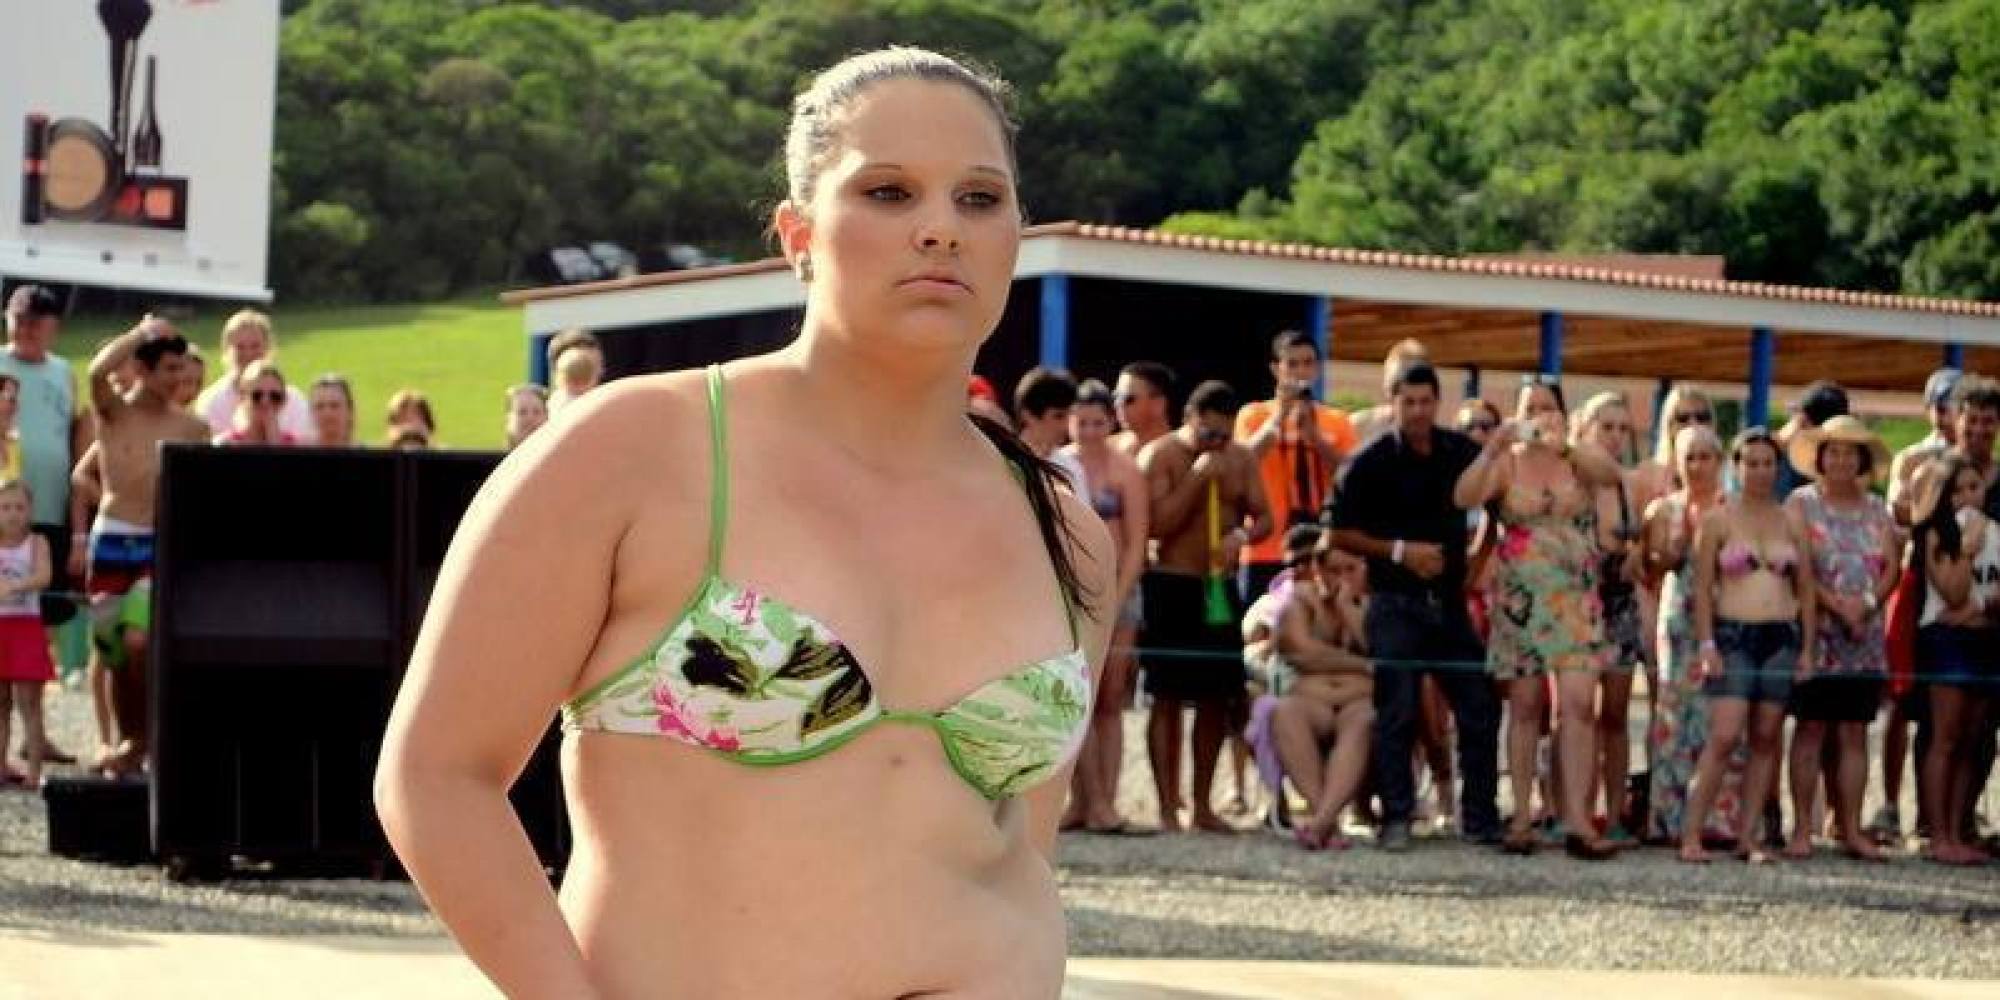 Adolescente 'fora do padrão' entra em concurso de beleza e ARRASA! - Brasil Post